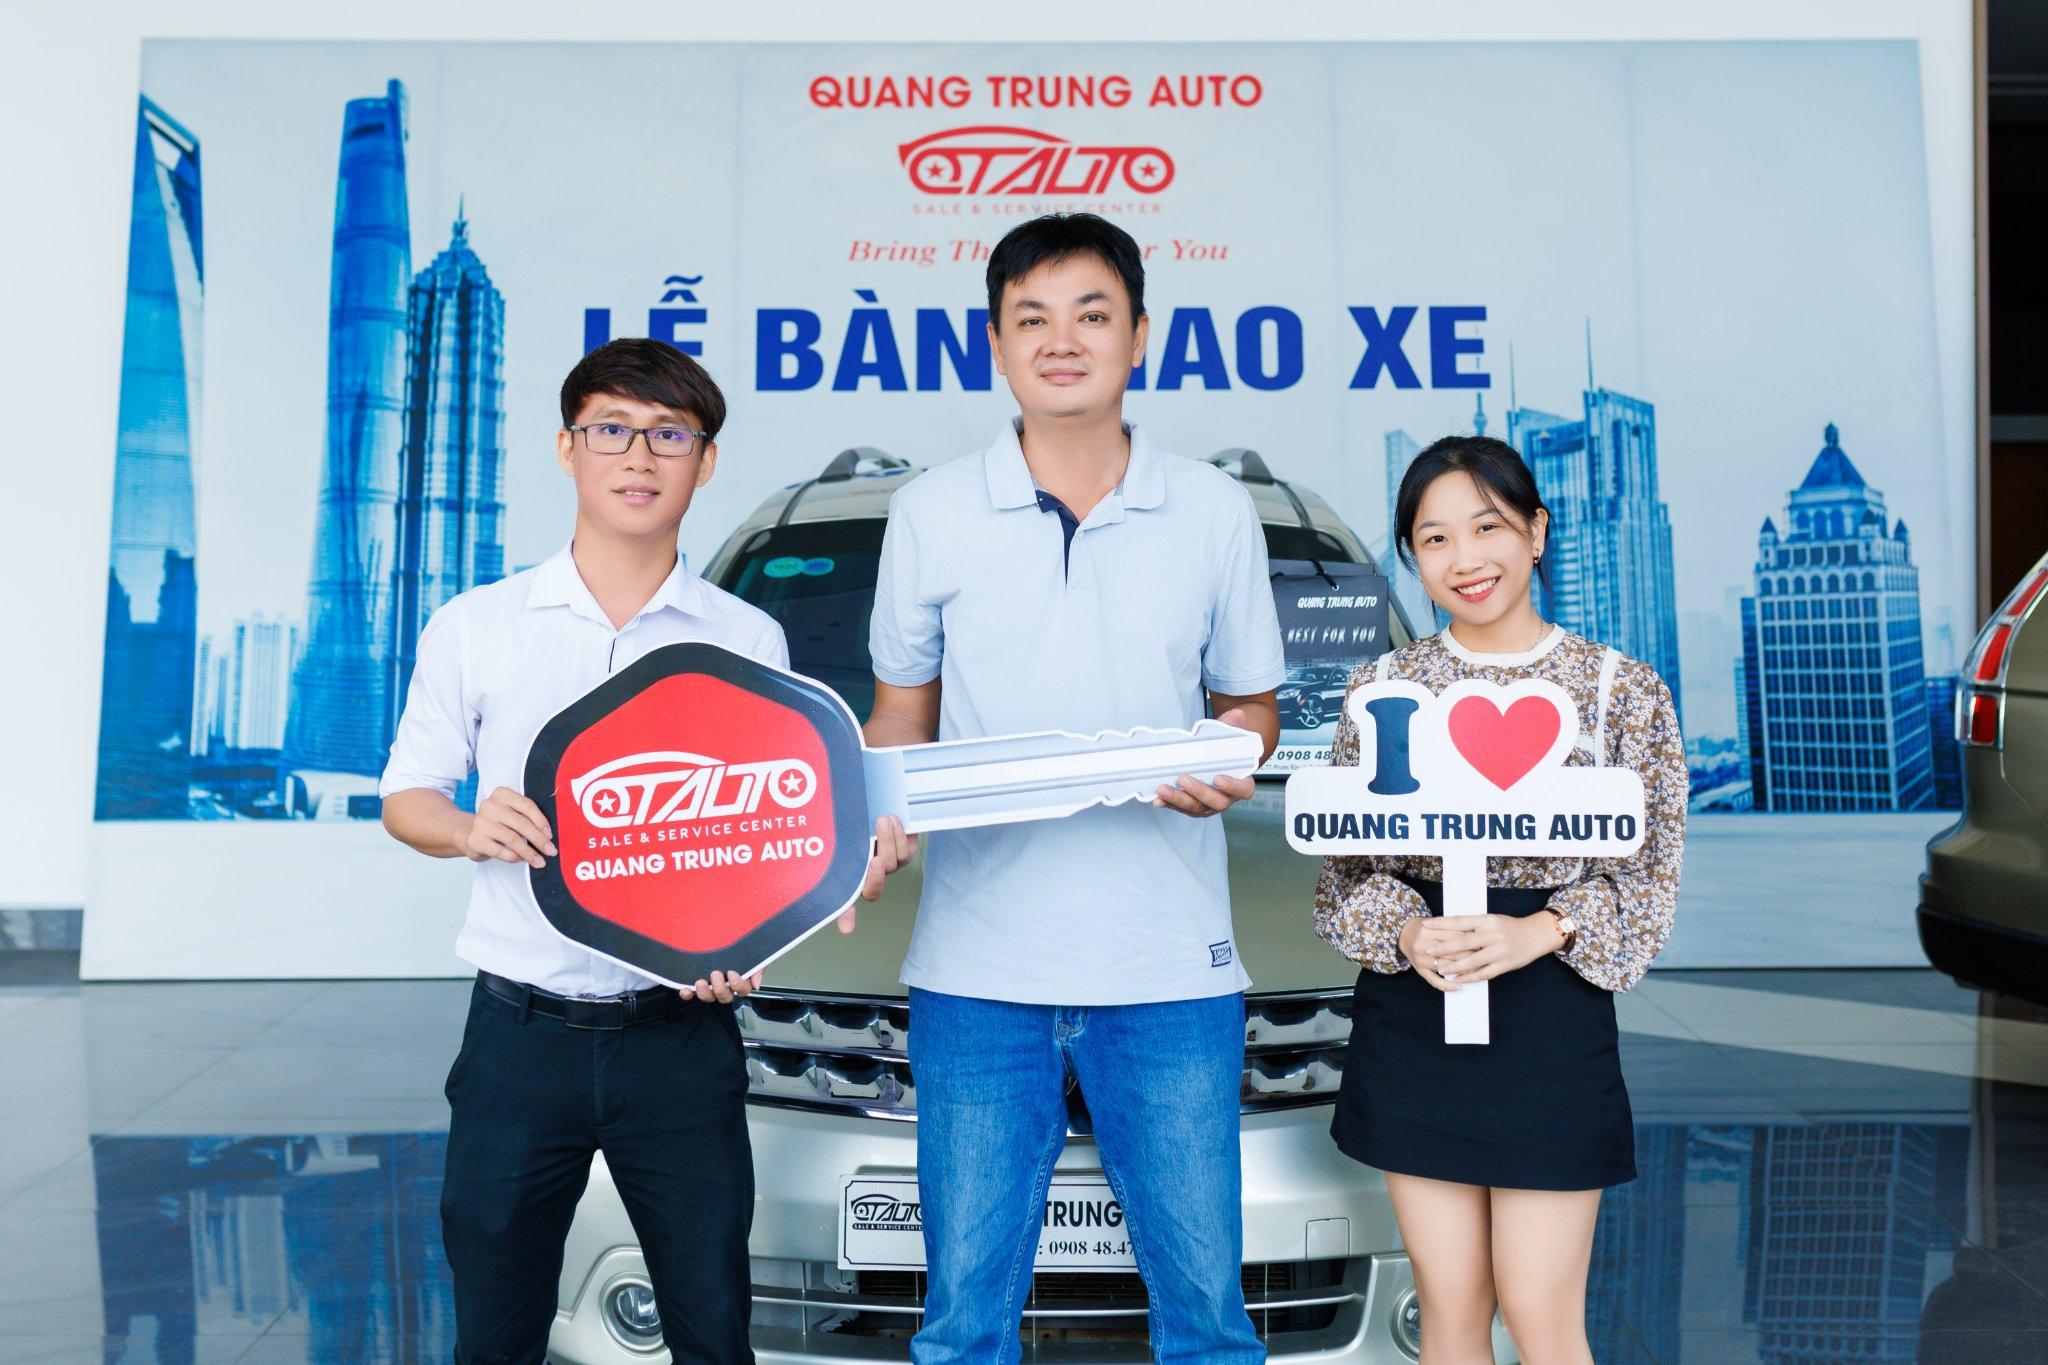 Đừng bỏ lỡ Quang Trung Auto - Garage chuyên sửa chữa và mua bán ô tô uy tín tại Bà Rịa Vũng Tàu - 6